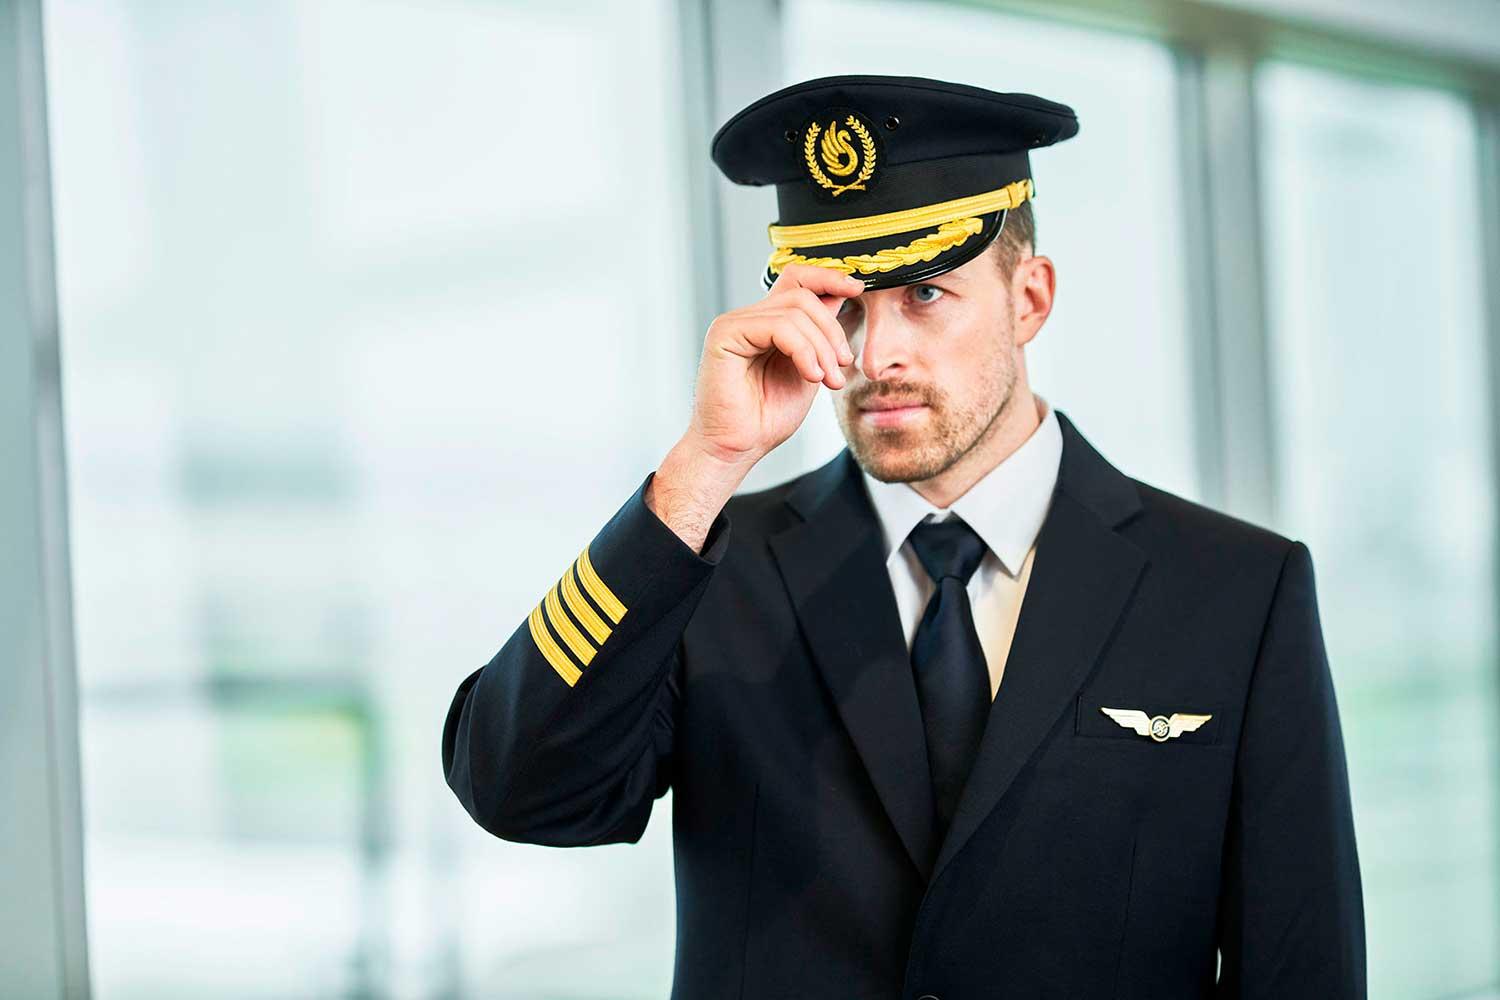 Pilot with cap